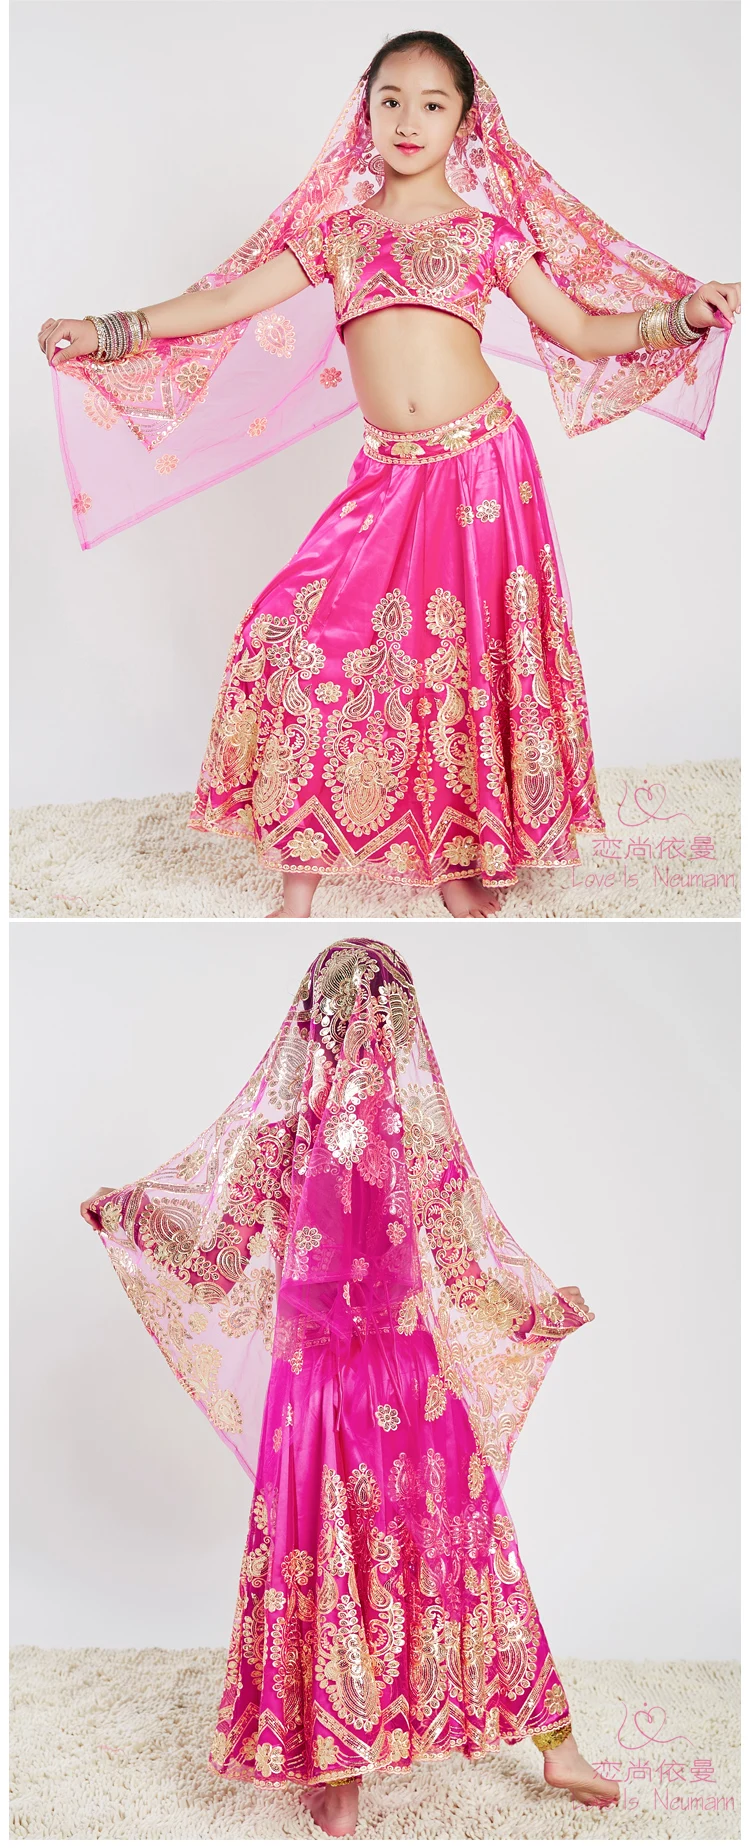 Сари индийский традиционный Детский костюм этнический стиль представление девушка танец великолепные костюмы топ+ юбка+ шарф+ брюки